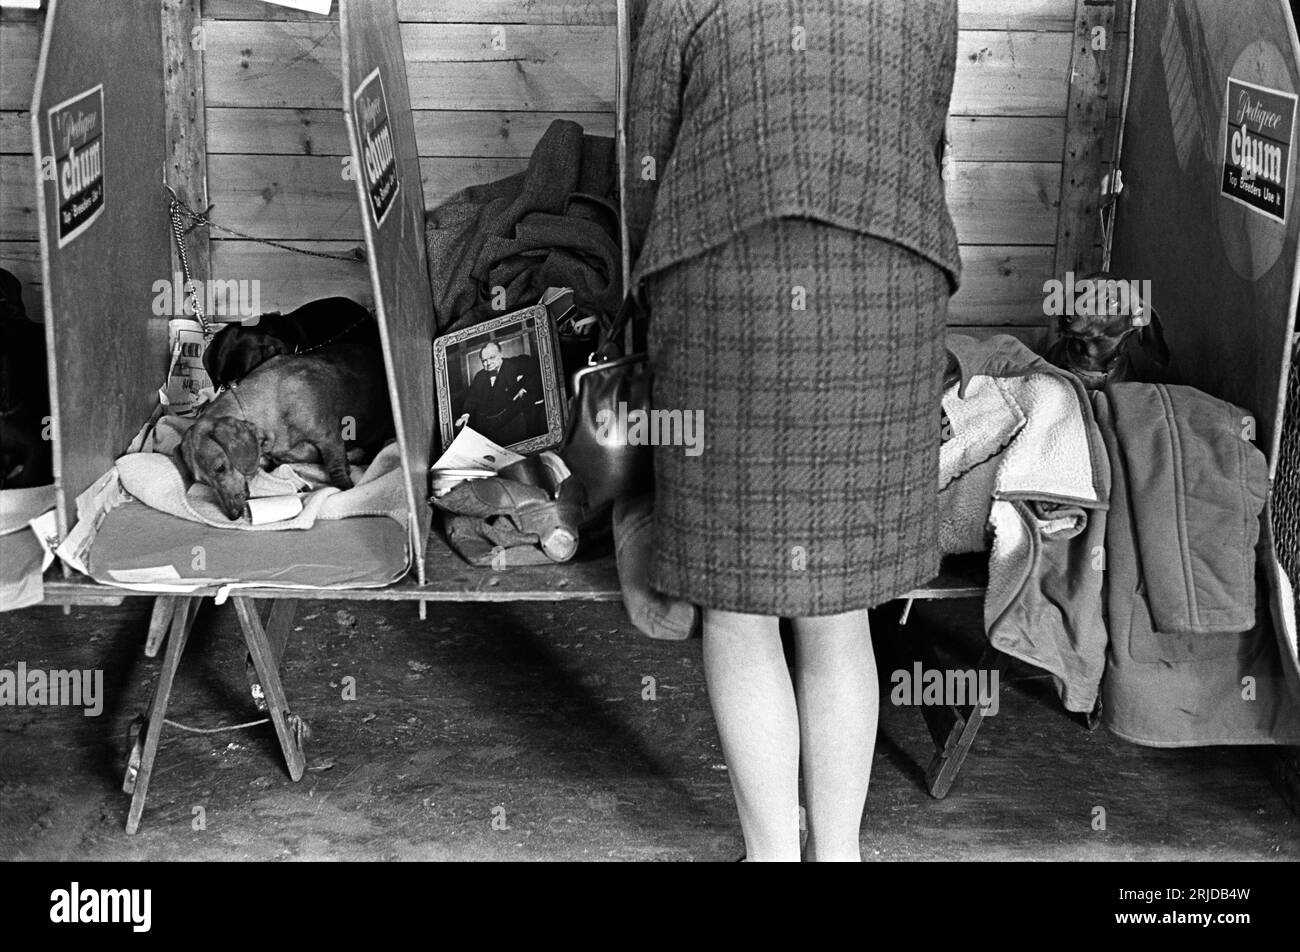 1960er Jahre Earls Court, London, Crufts Dog Show im Olympia Ausstellungszentrum, eine Frau, die ihre Dachshunds zeigt, schläft in ihrem Abteil. Ein Bild von Winston Churchill auf einem Blechdeckel. Earls Court, London, England, Februar 1968. HOMER SYKES. Stockfoto